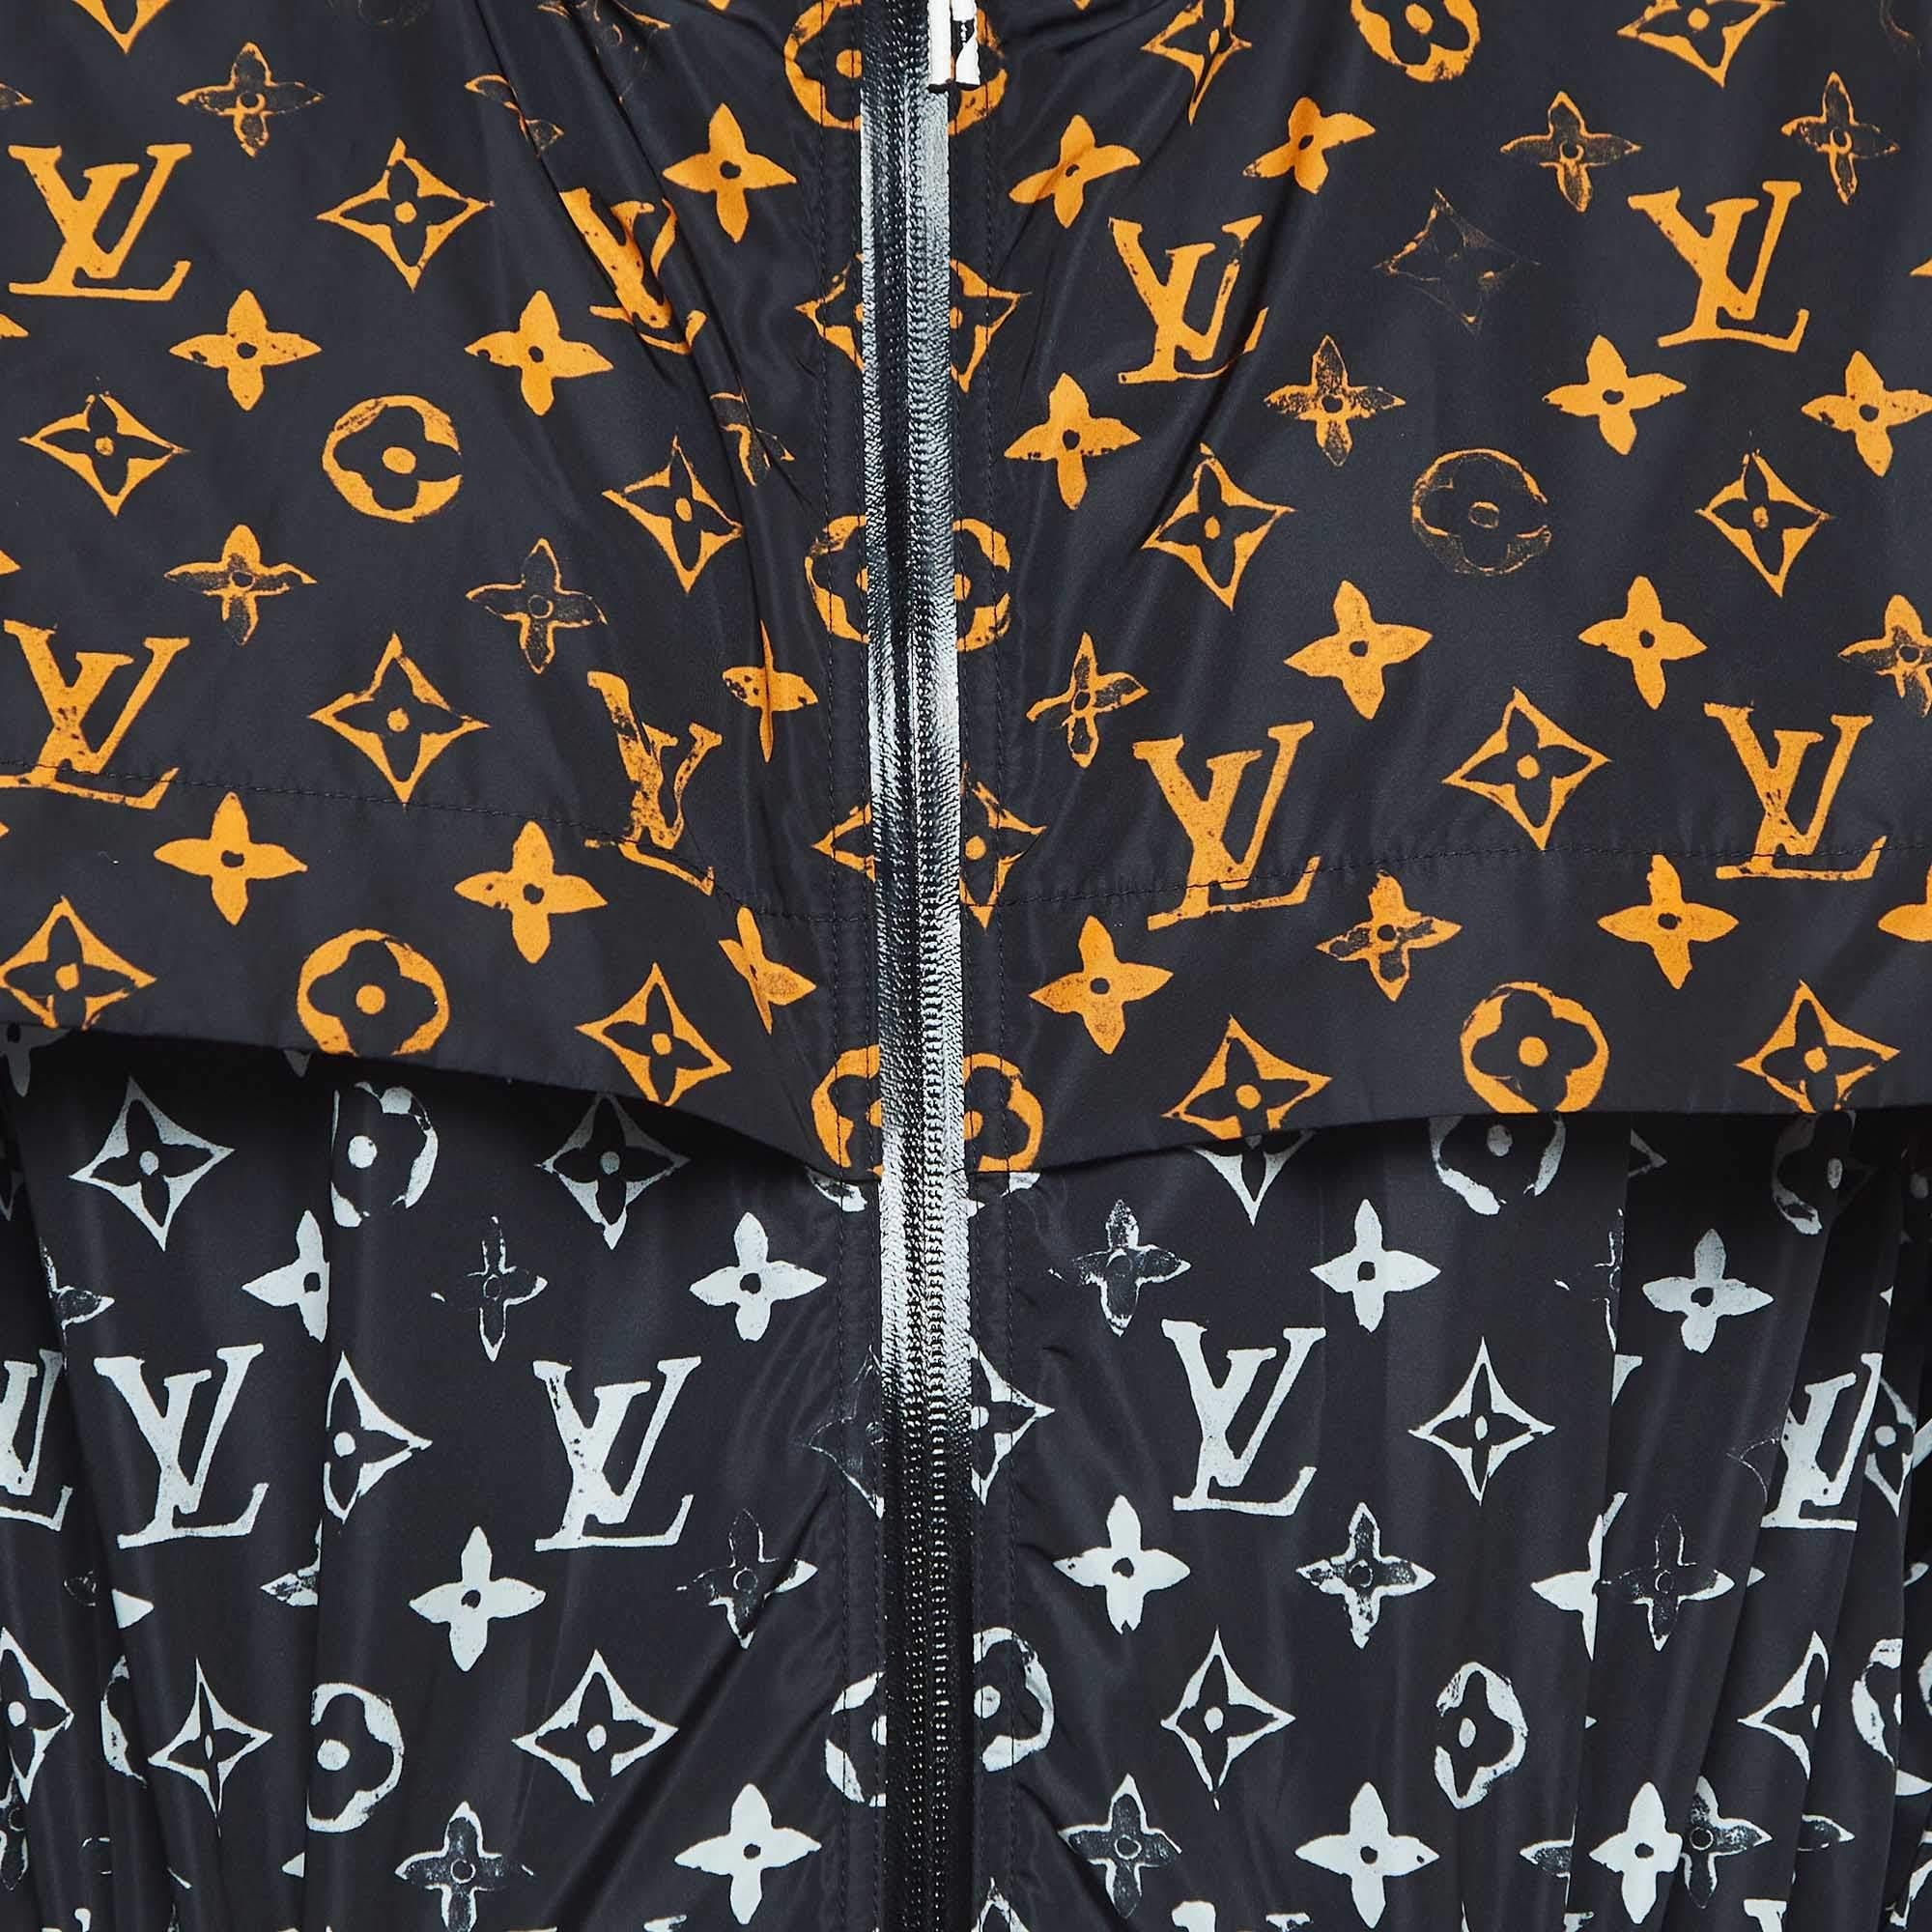 Women's Louis Vuitton Black Monogram Nylon Zip Front Parker Jacket S